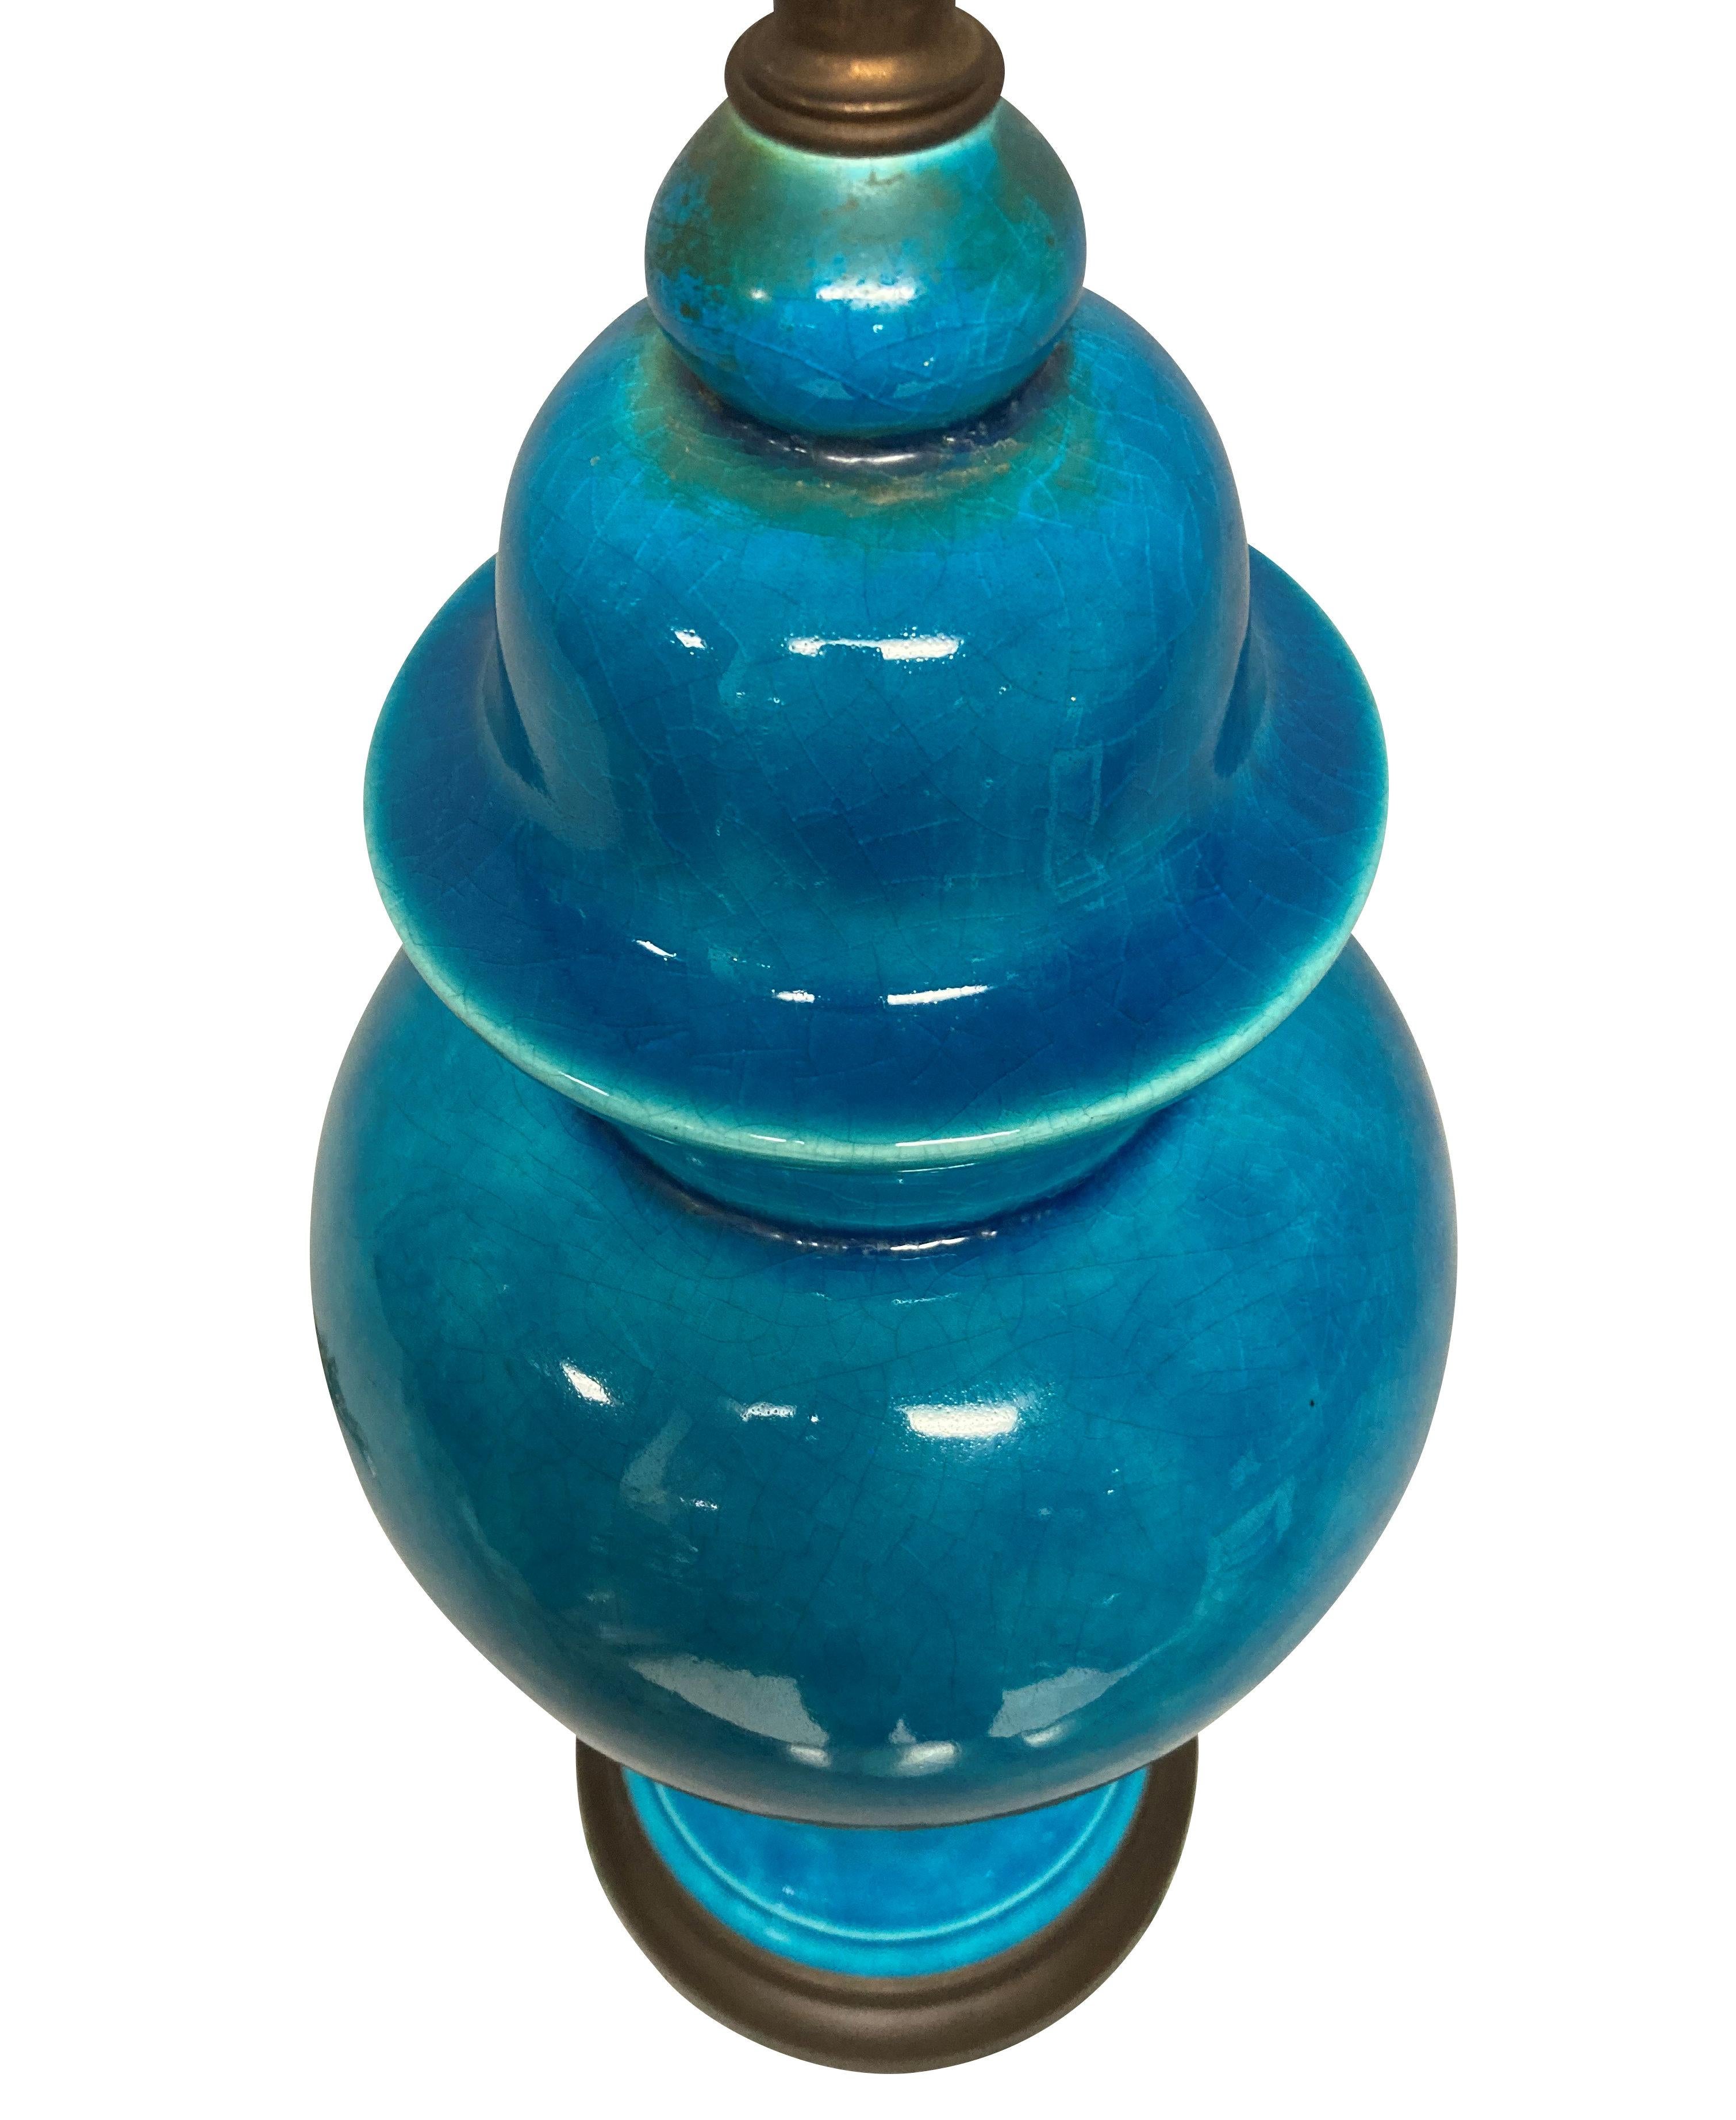 Eine chinesische, türkis glasierte Vasenlampe mit bronzierten Beschlägen.